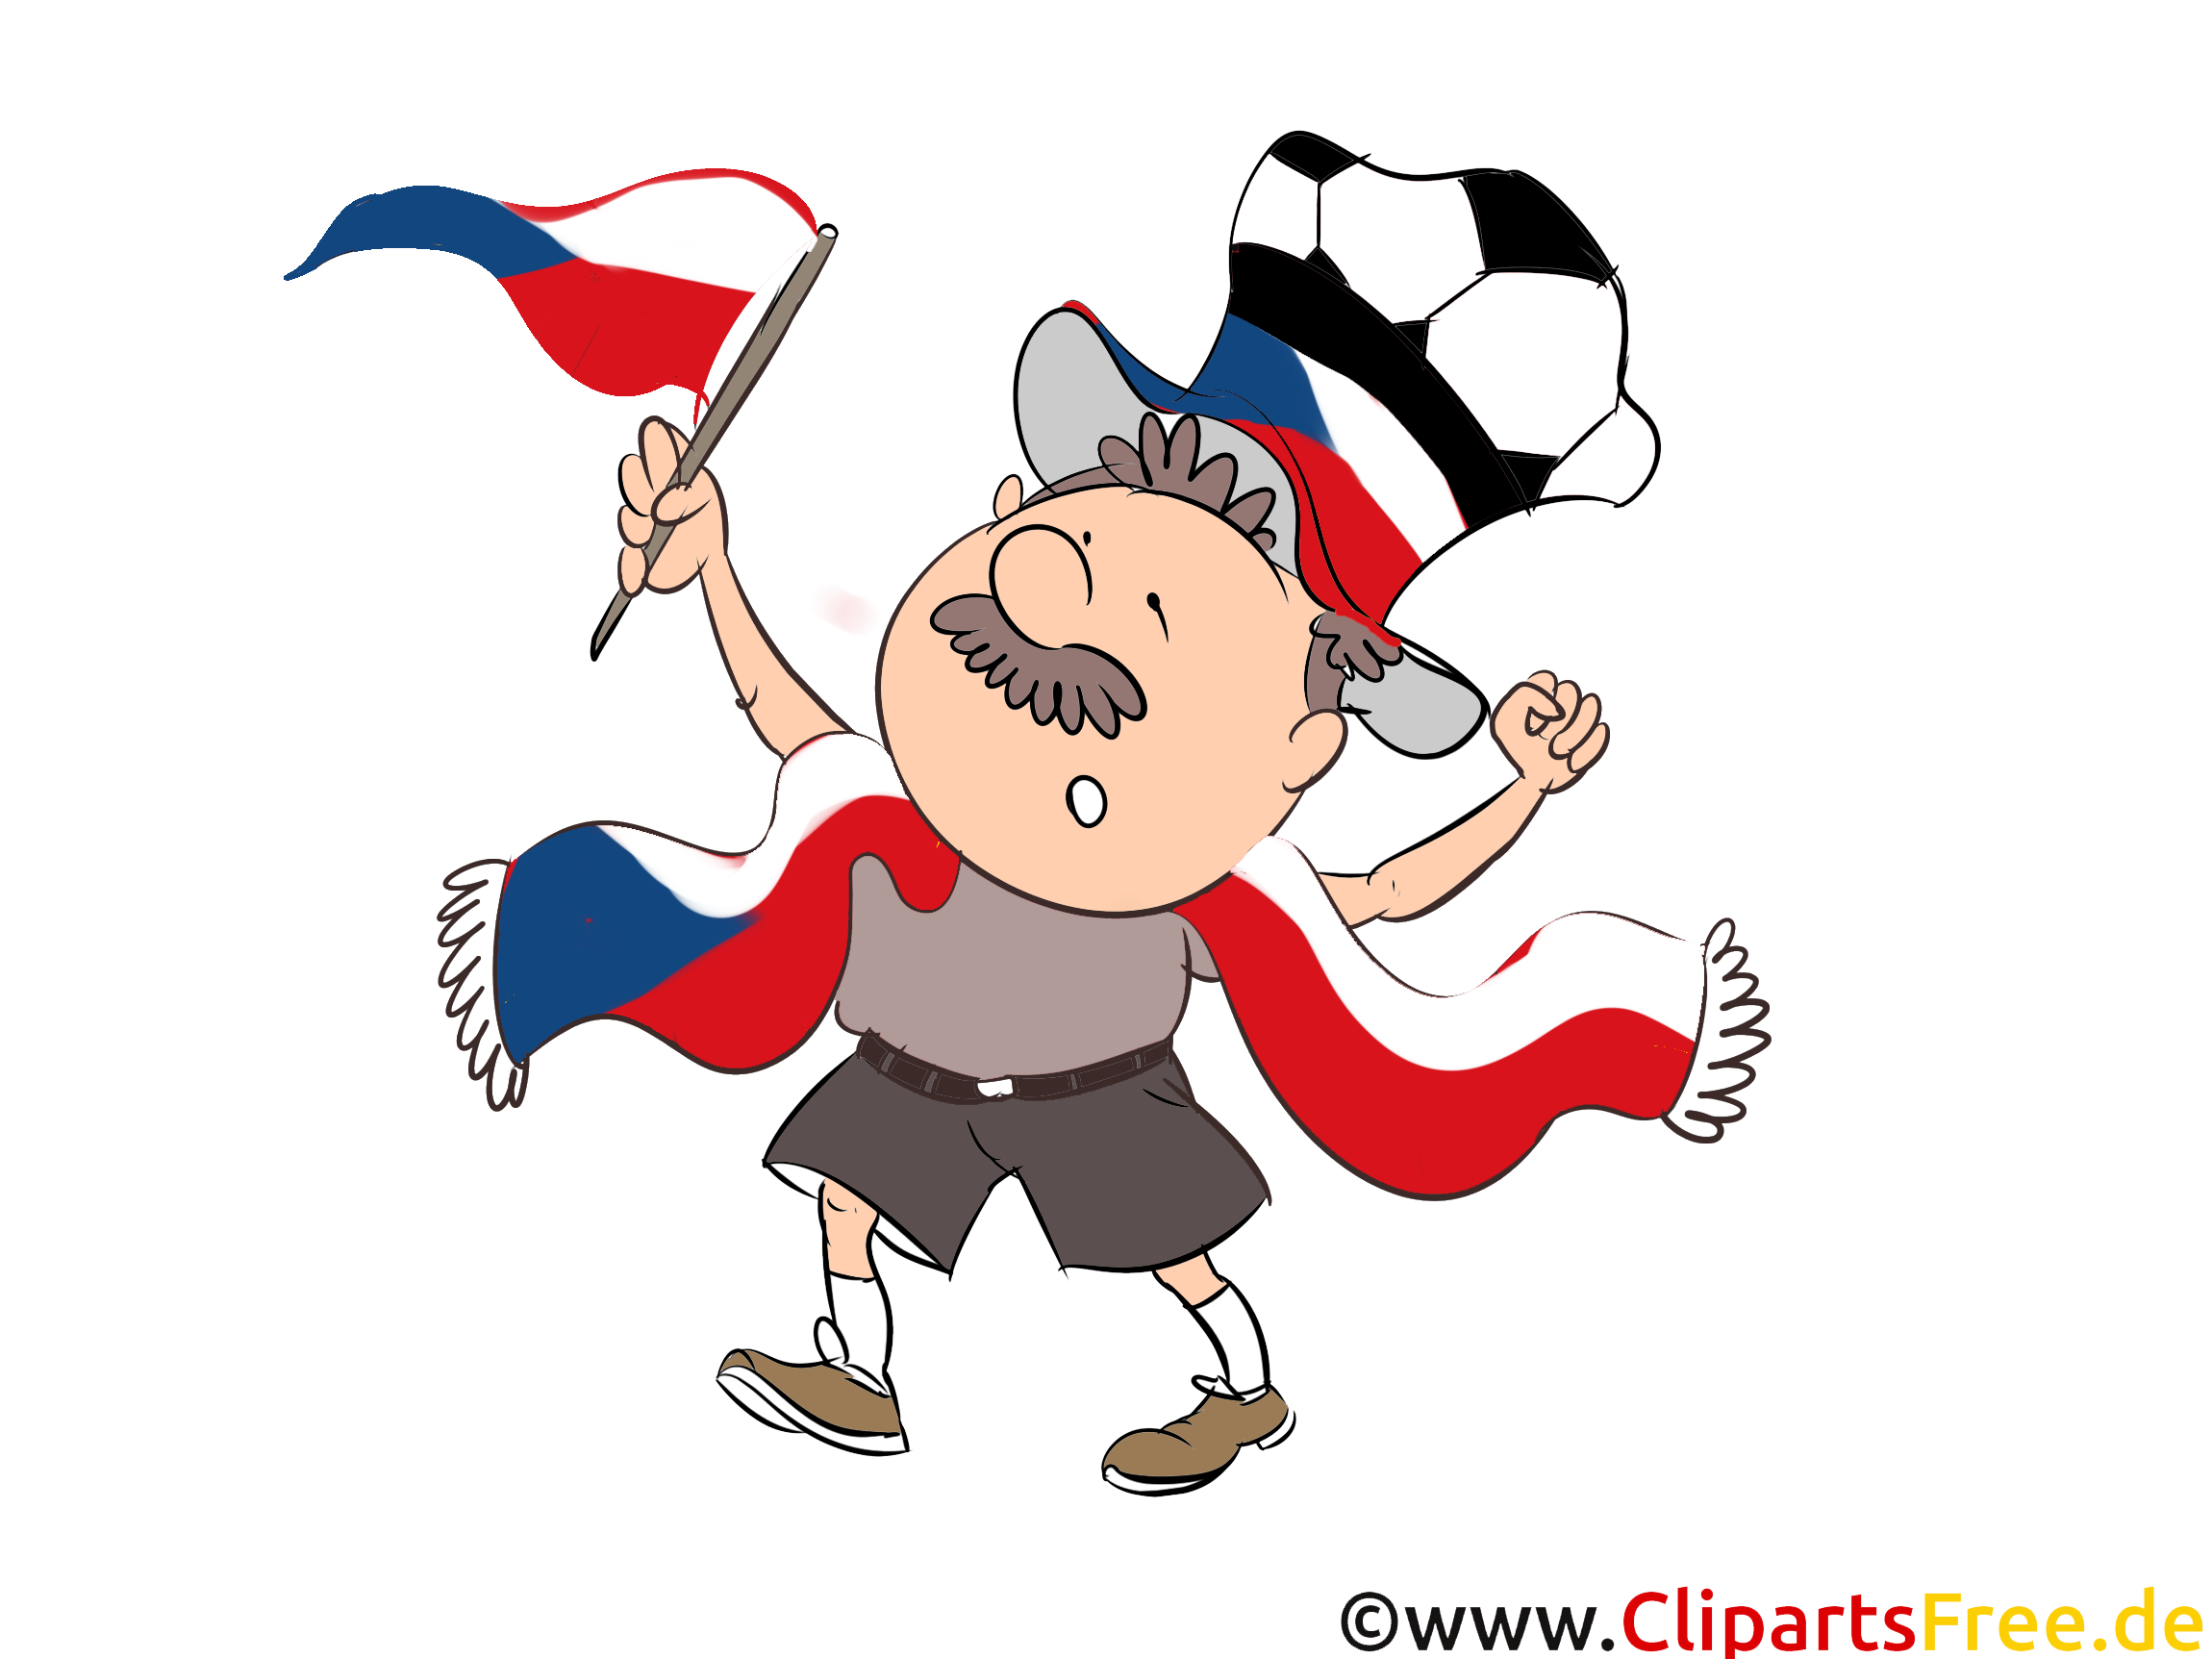 Coupe du Monde Tchèque gratuitement télécharger